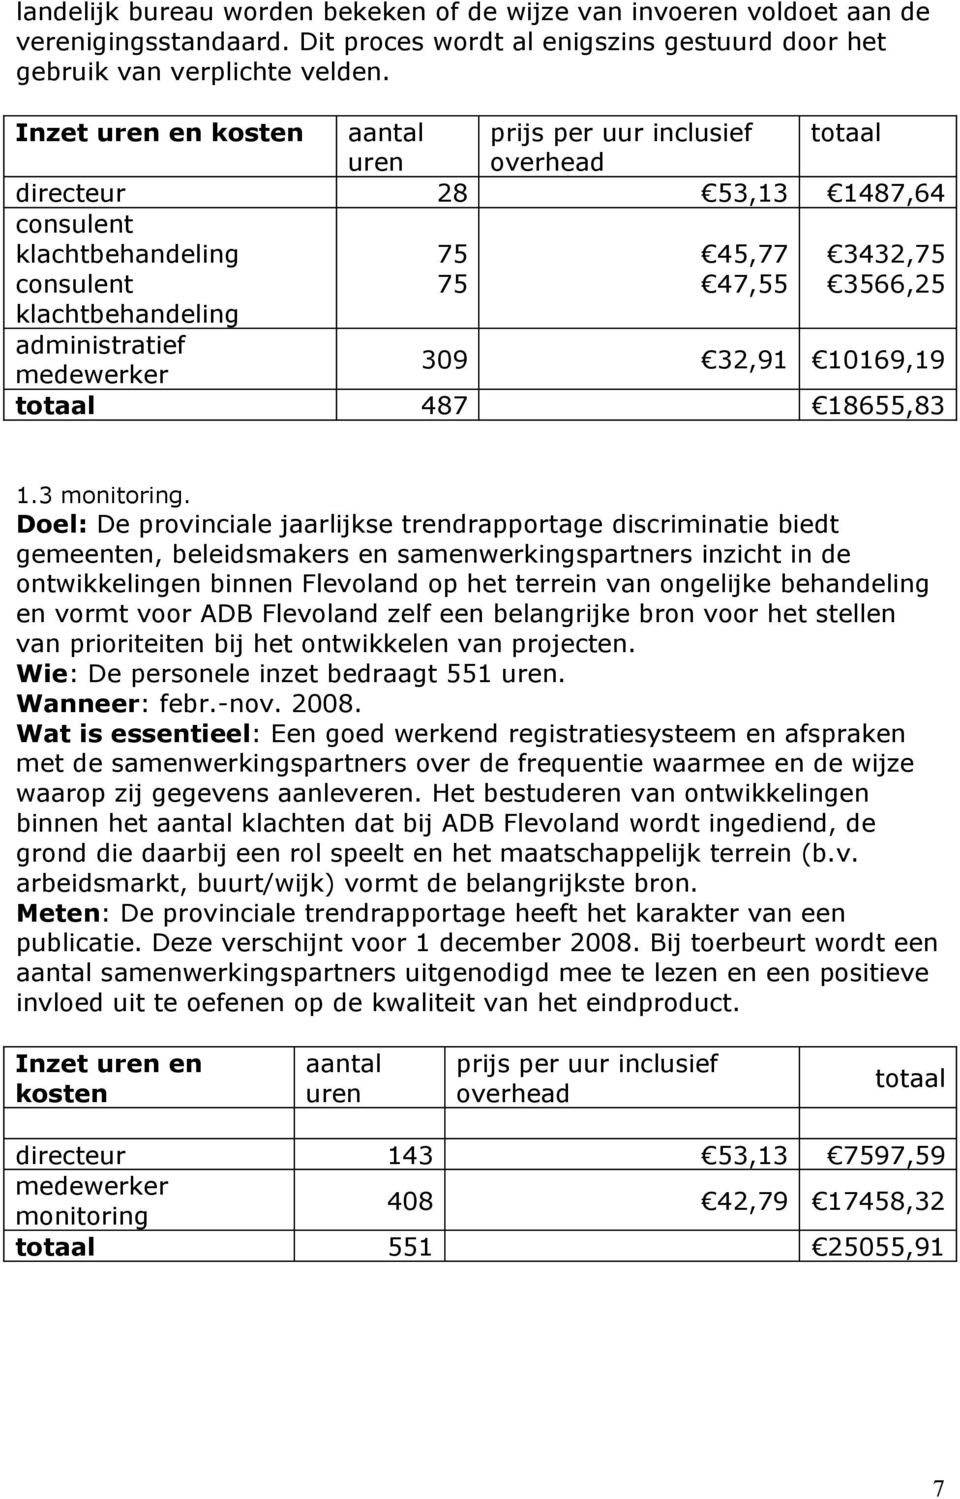 Doel: De provinciale jaarlijkse trendrapportage discriminatie biedt gemeenten, beleidsmakers en samenwerkingspartners inzicht in de ontwikkelingen binnen Flevoland op het terrein van ongelijke